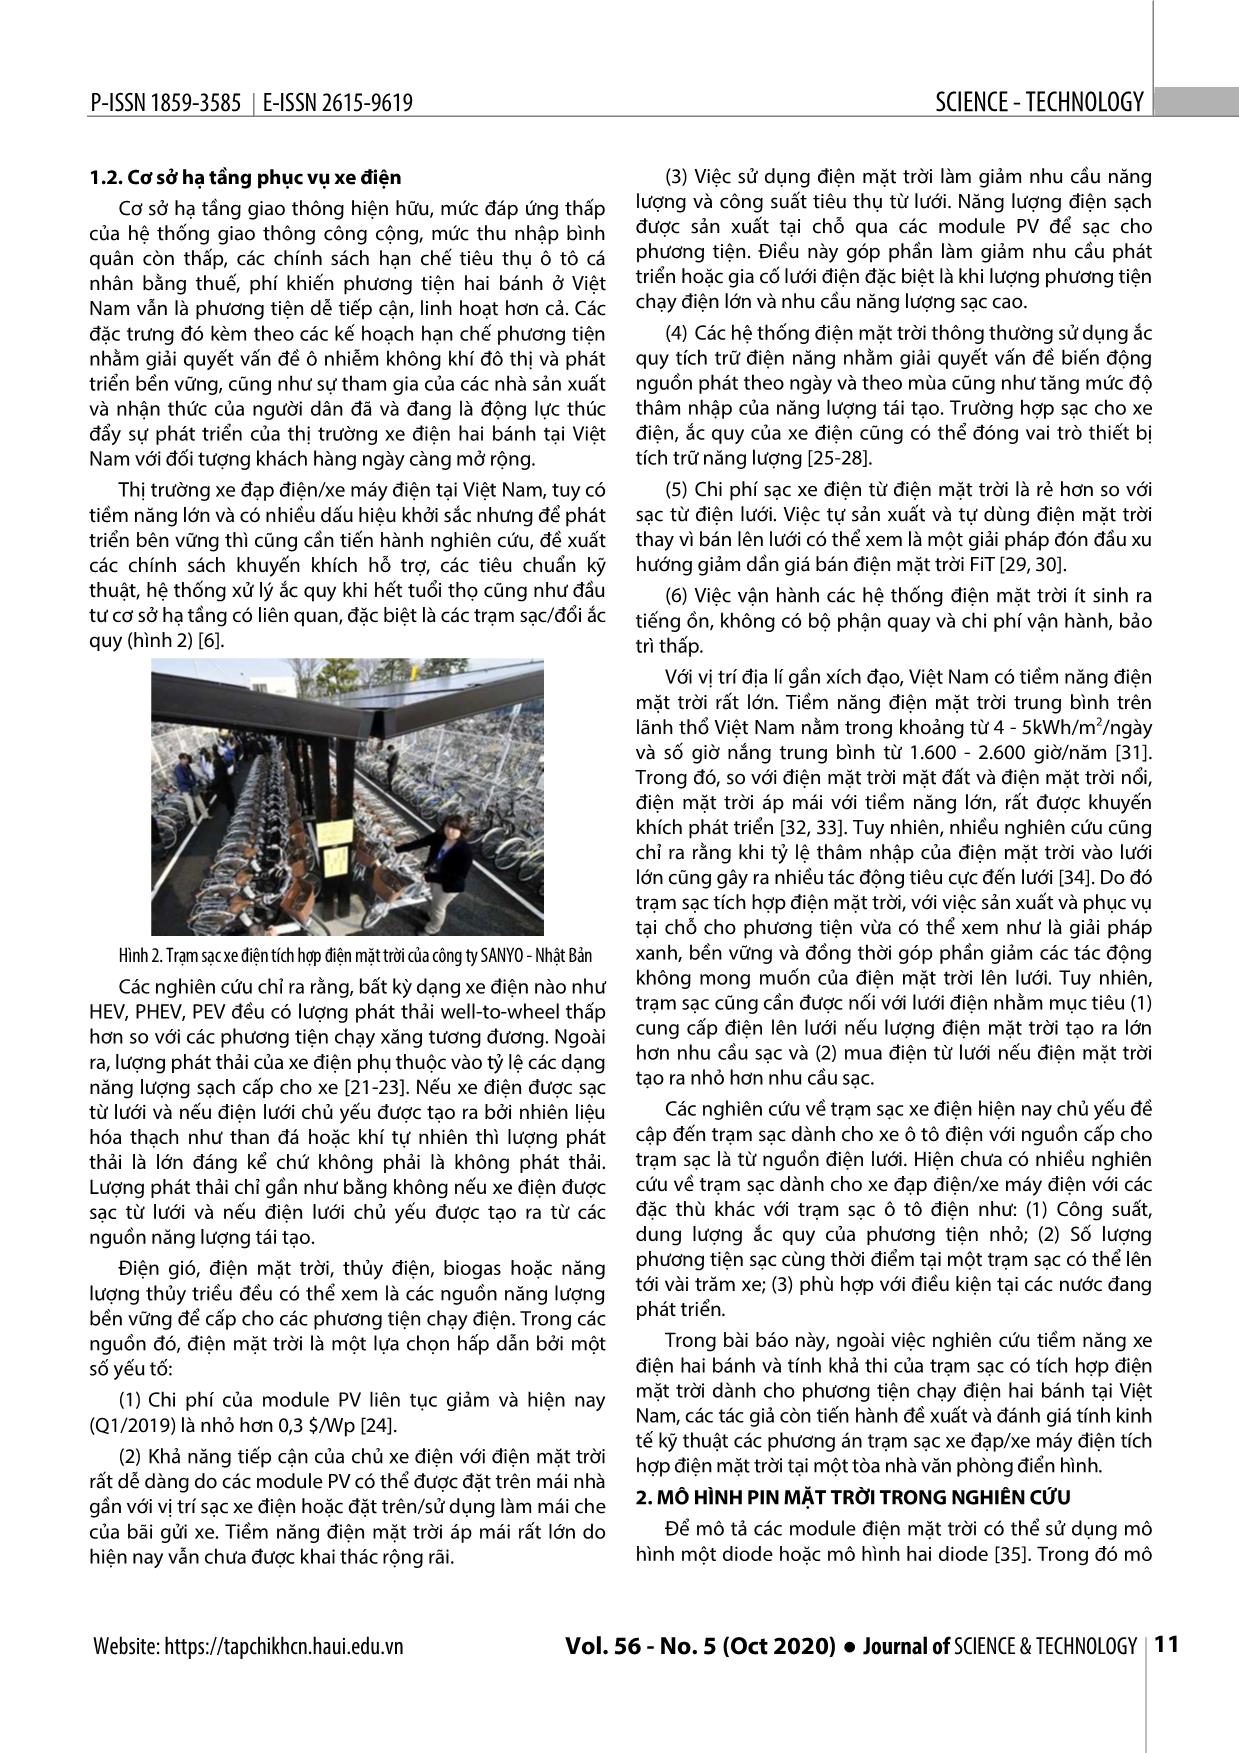 Nghiên cứu xu hướng điện khí hóa giao thông ở Việt Nam và đánh giá kinh tế kỹ thuật trạm sạc xe điện hai bánh tích hợp điện mặt trời tại tòa nhà E.Town 2 - thành phố Hồ Chí Minh trang 3